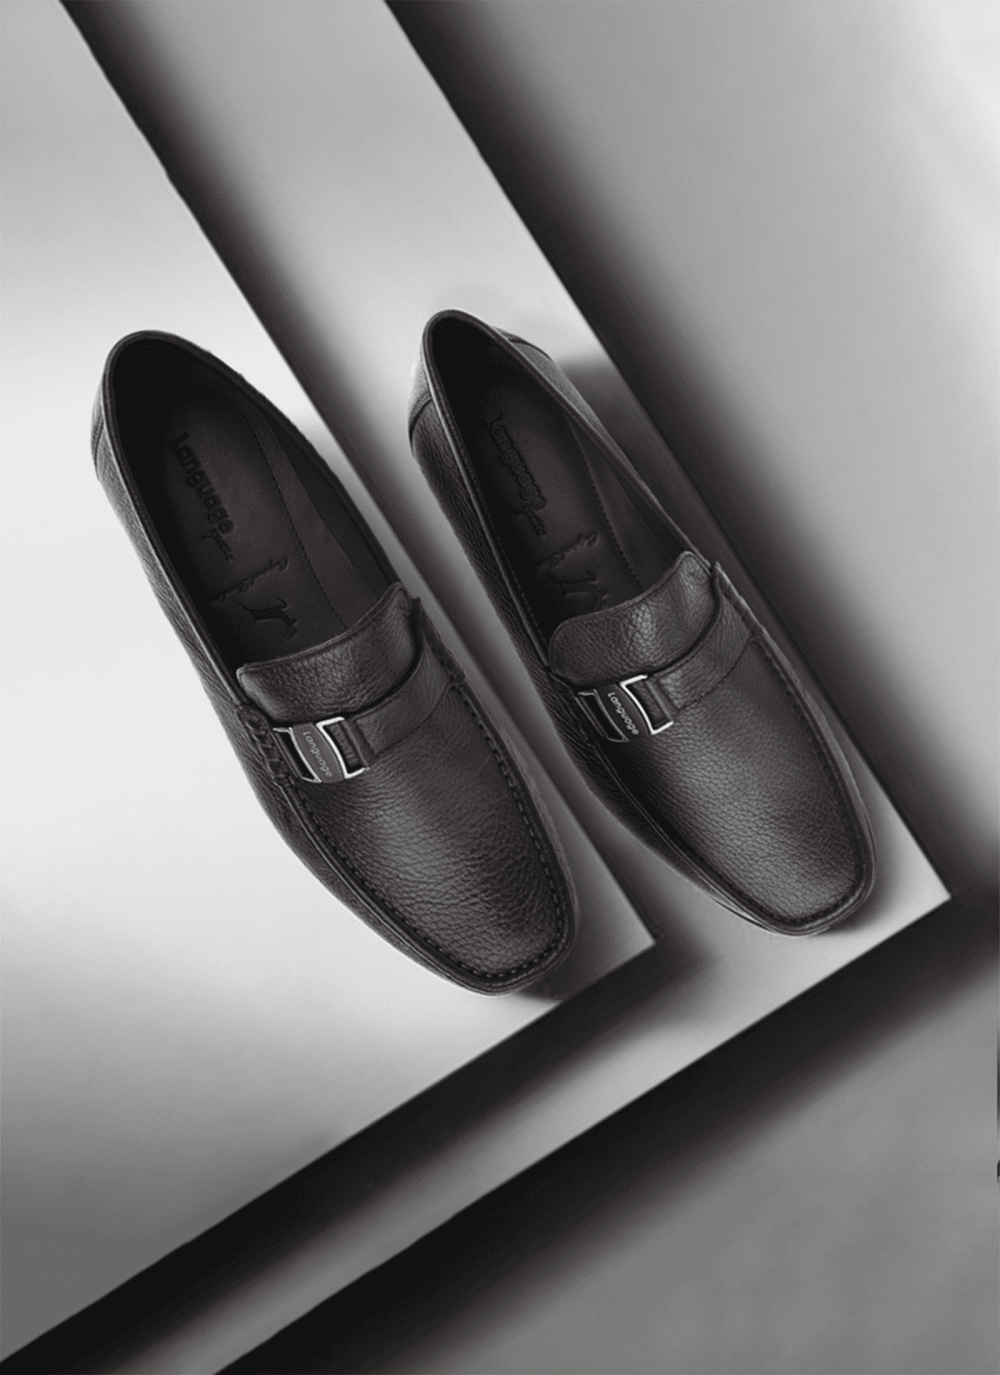 Language Shoes-Men-Eurus-Moccasin-Premium Leather-Brown Colour-Formal Shoe